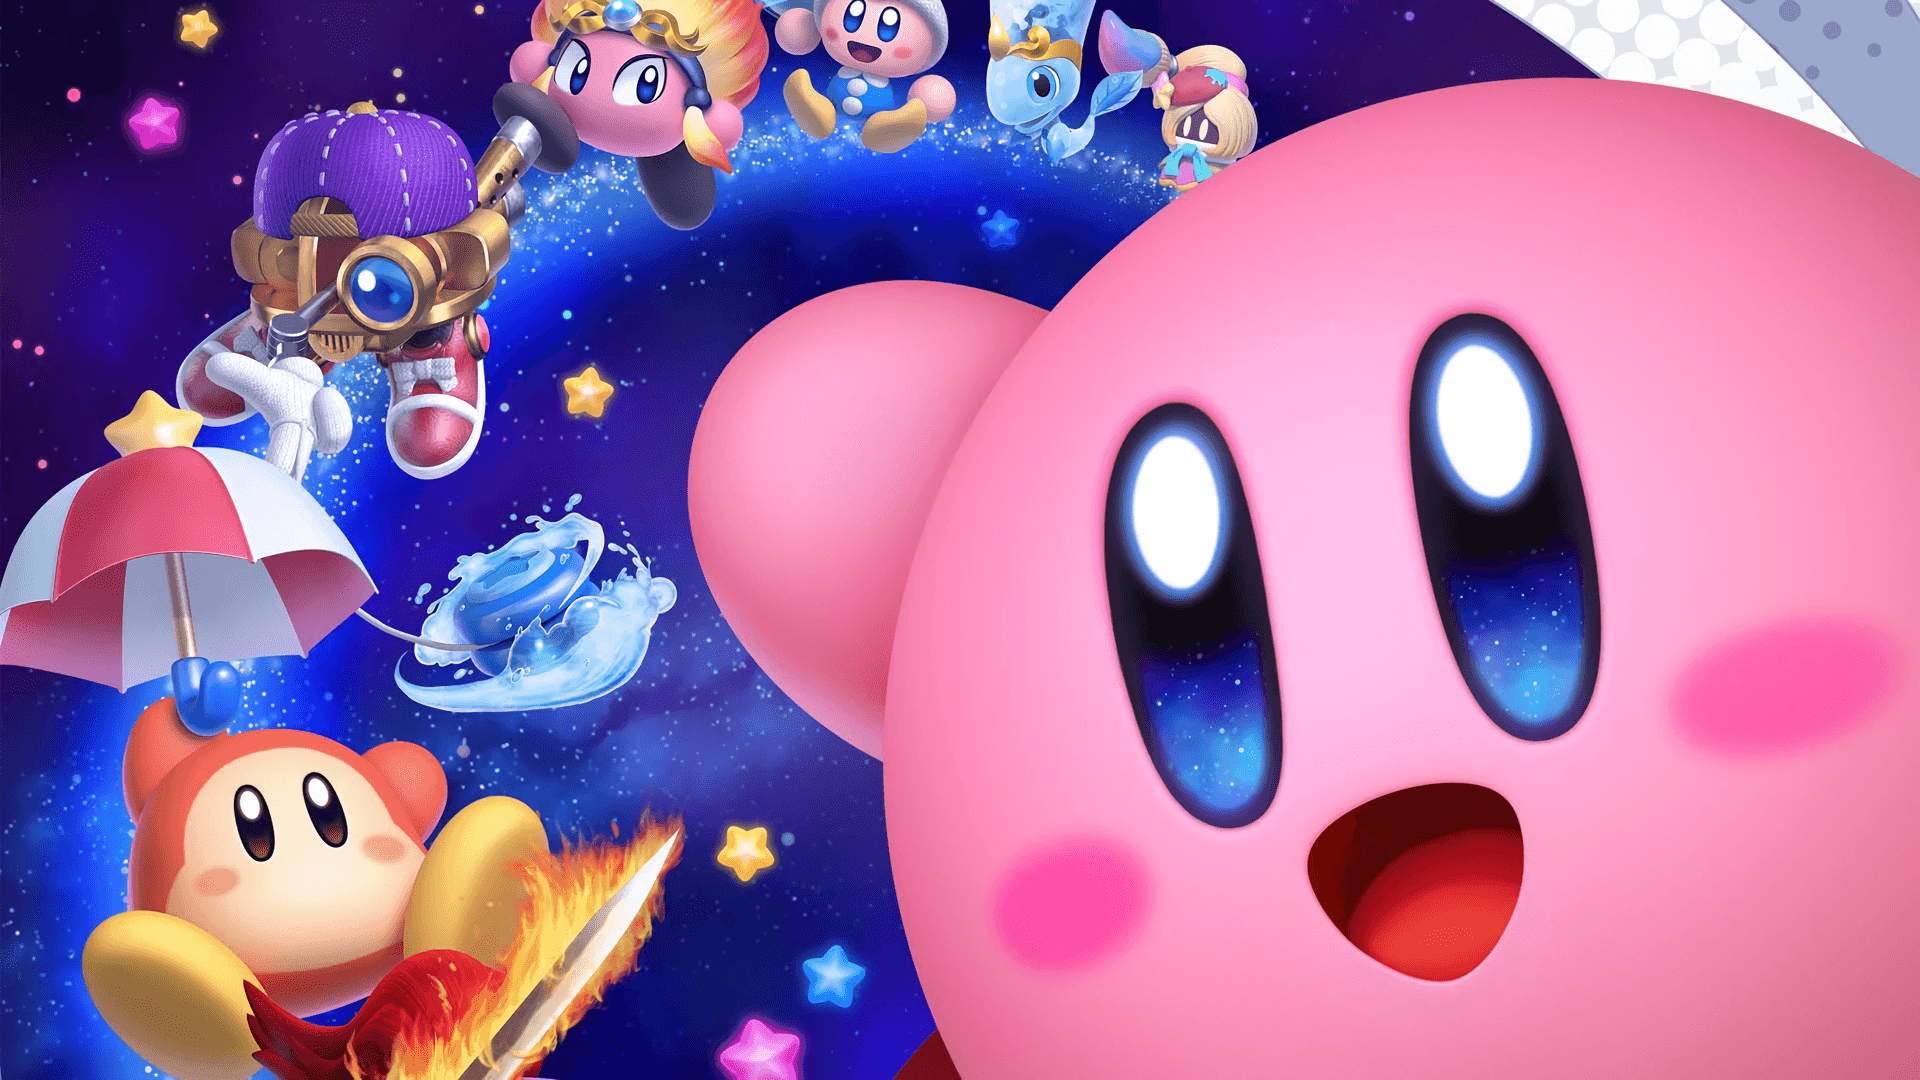 Hình nền Kirby HD độ phân giải cao sẽ đưa bạn vào thế giới đầy màu sắc của Kirby. Với những hình ảnh độc đáo và tươi sáng, bạn sẽ không thể rời mắt khỏi chúng!